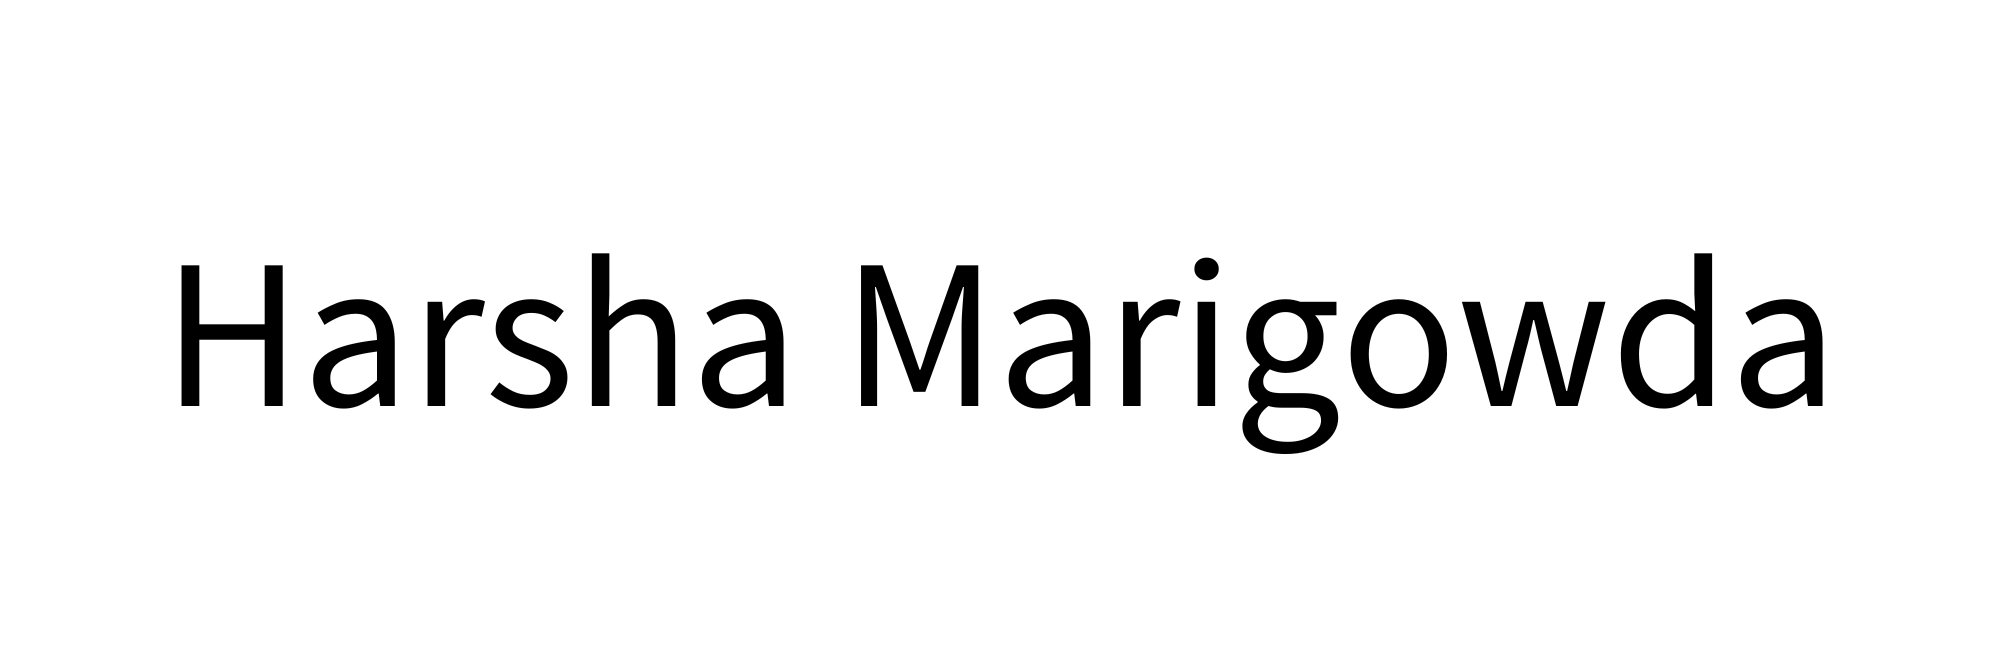 Harsha Marigowda